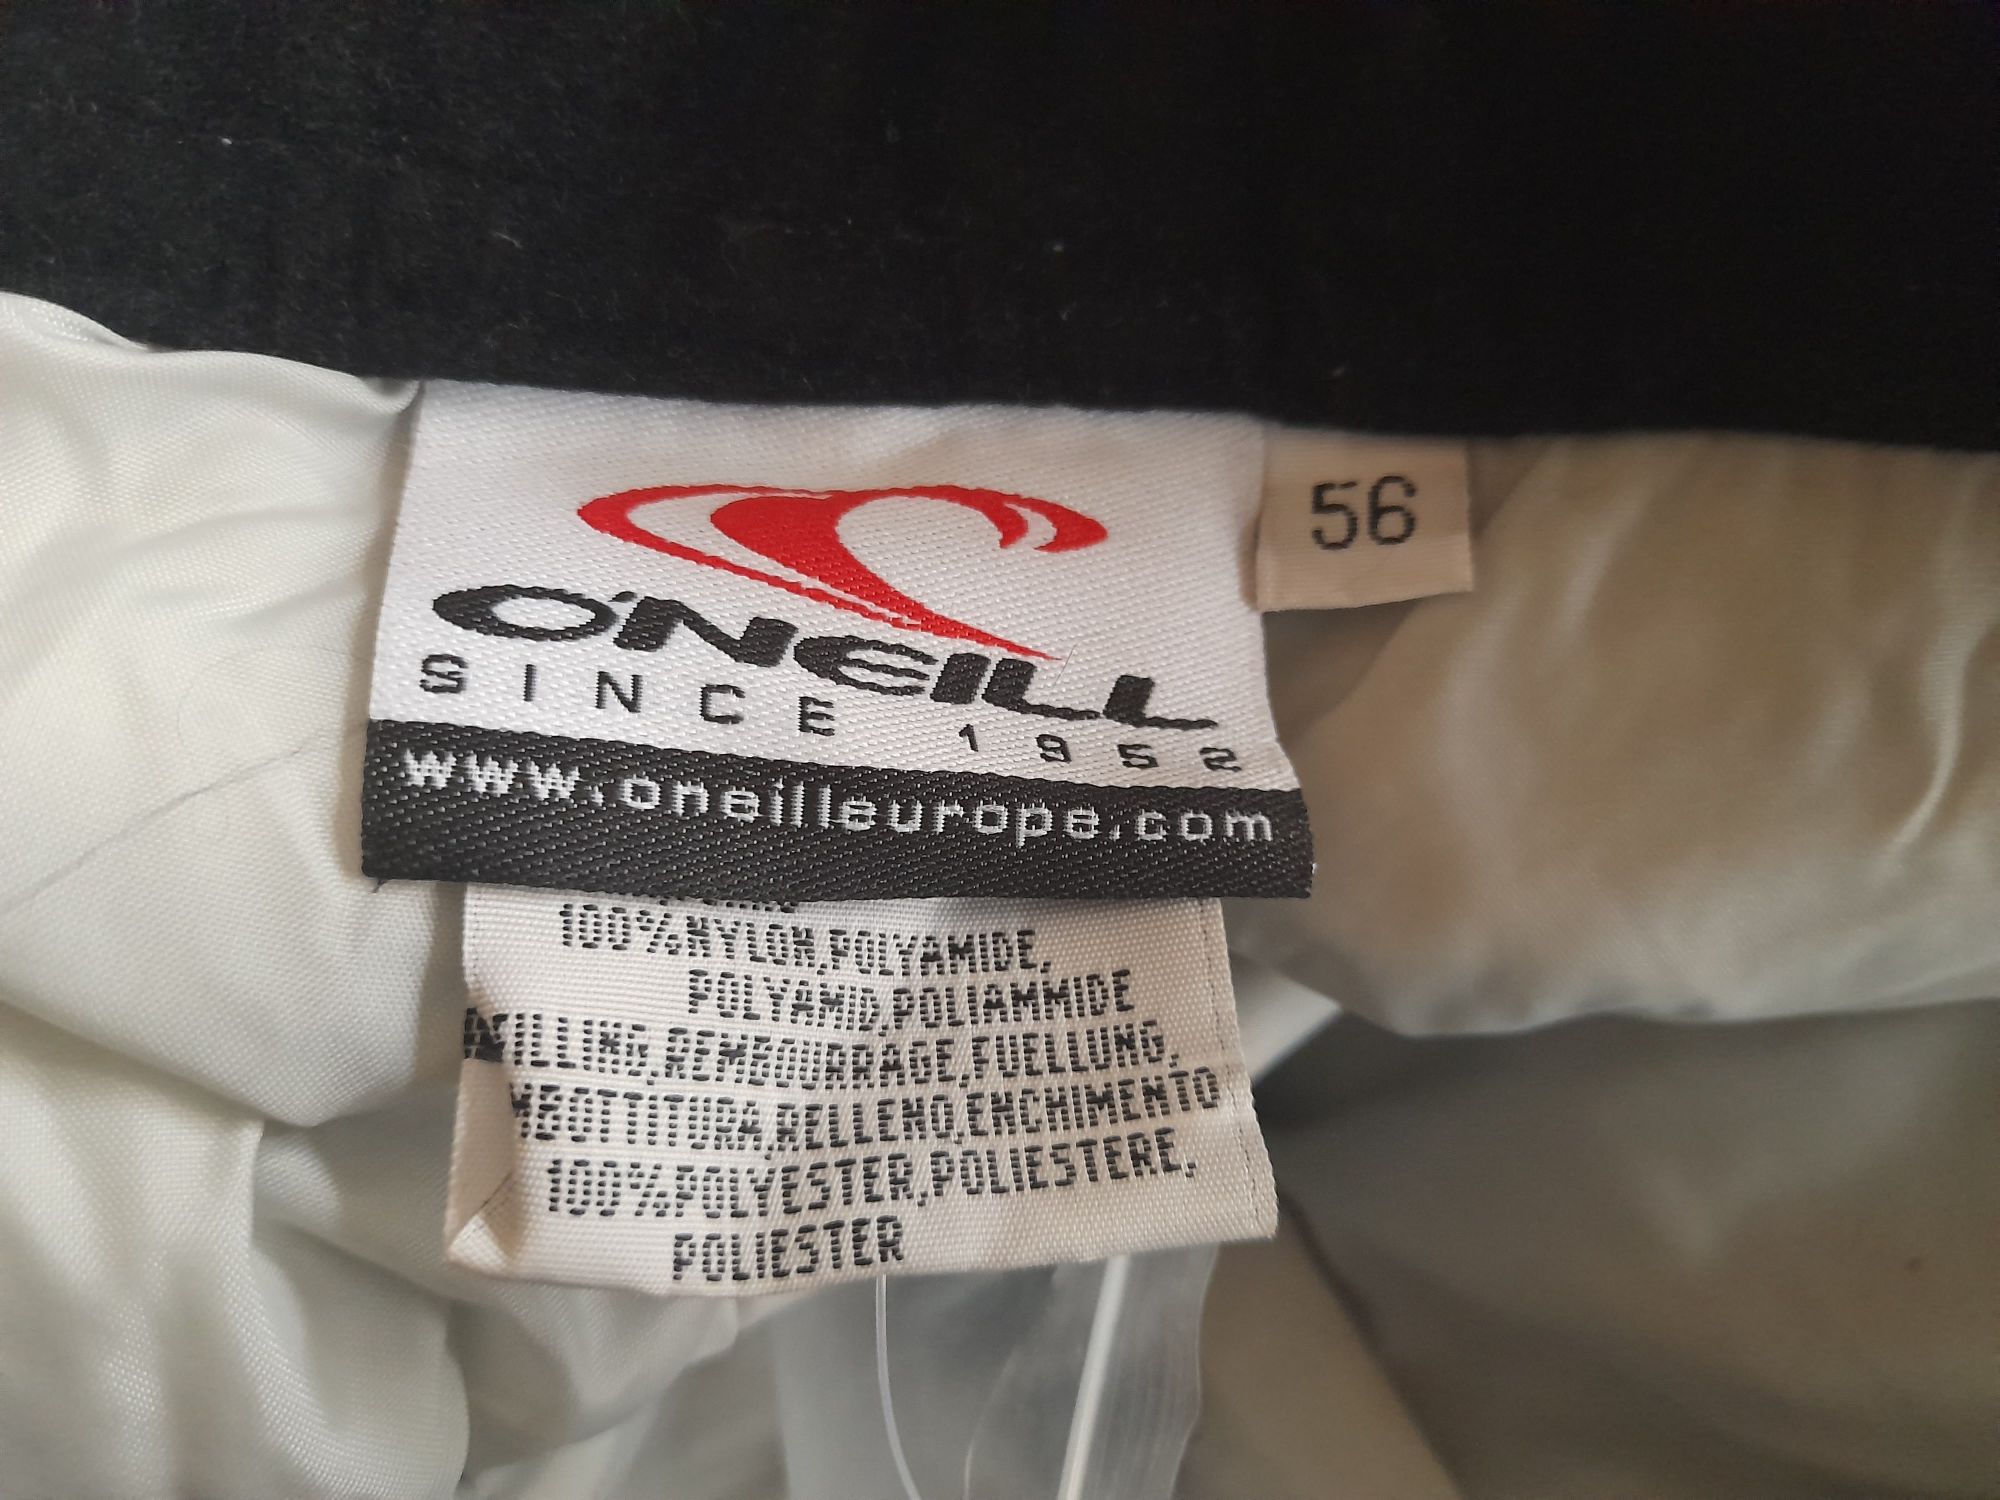 O'Neill spodnie narciarskie damskie rozmiar 56